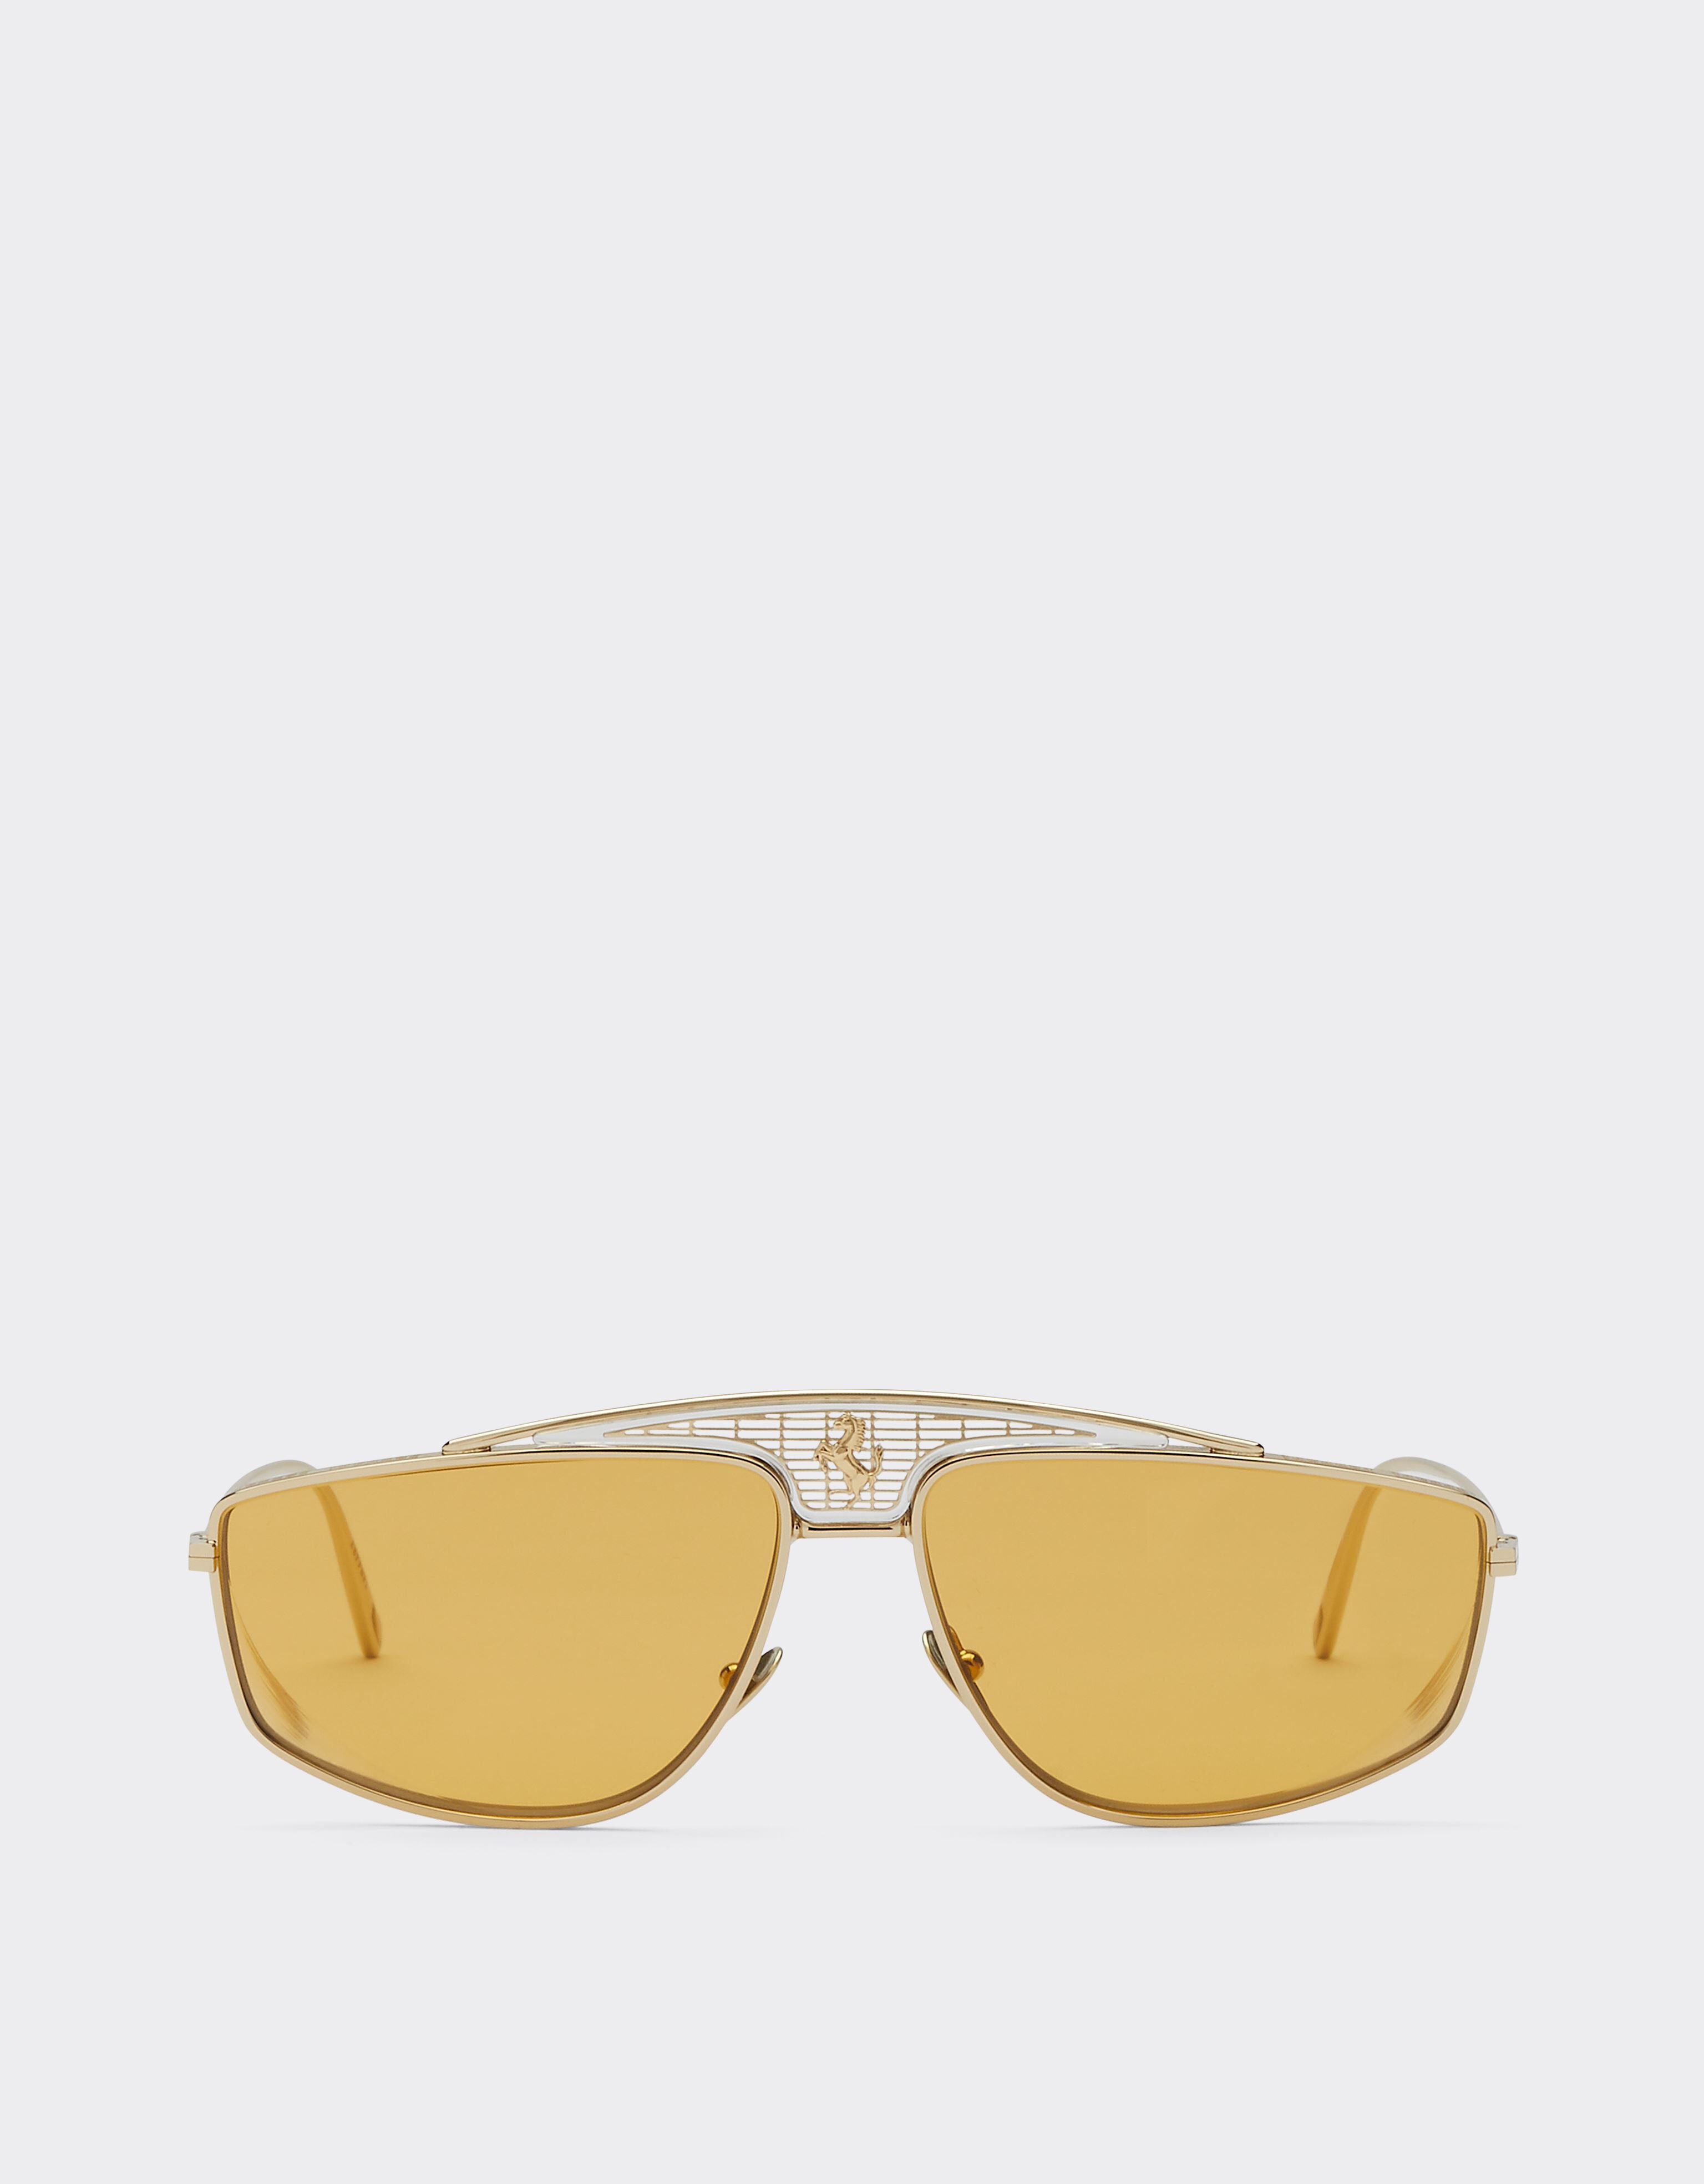 Ferrari Ferrari sunglasses with yellow lenses Silver F1247f